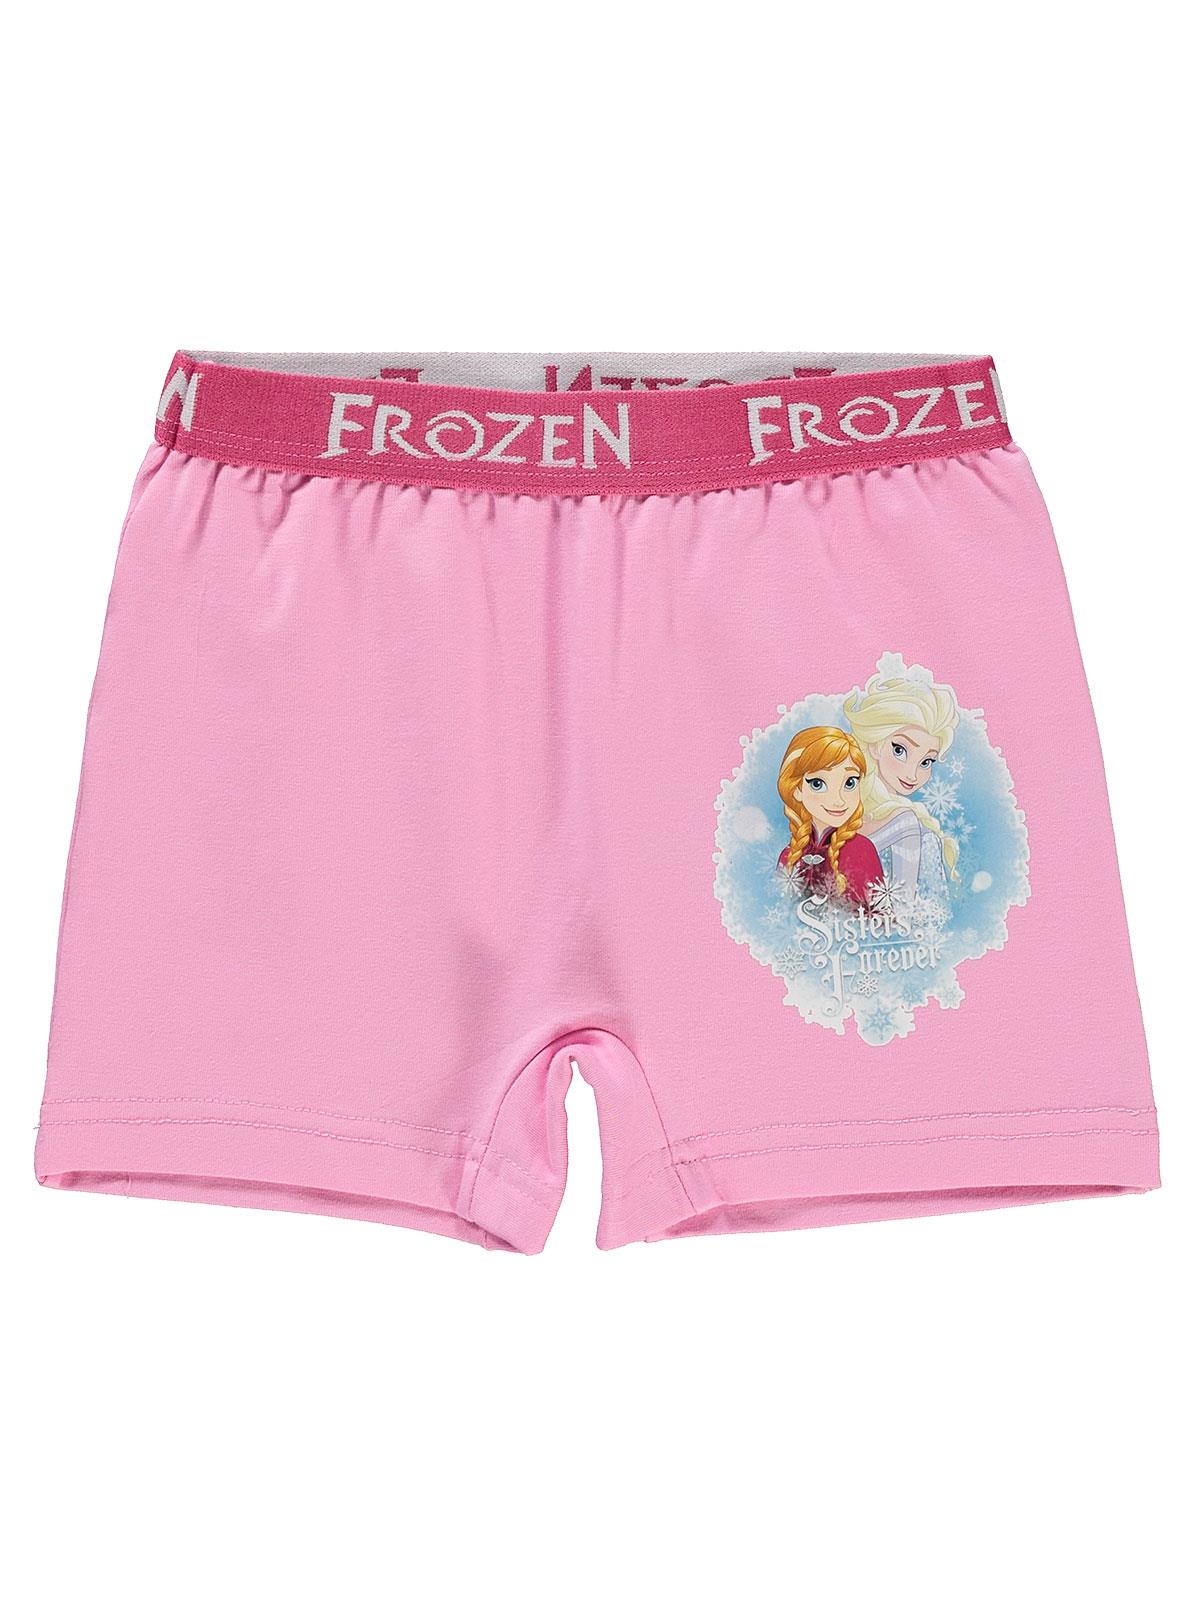 Frozen Kız Çocuk Boxer 2-7 Yaş Pembe